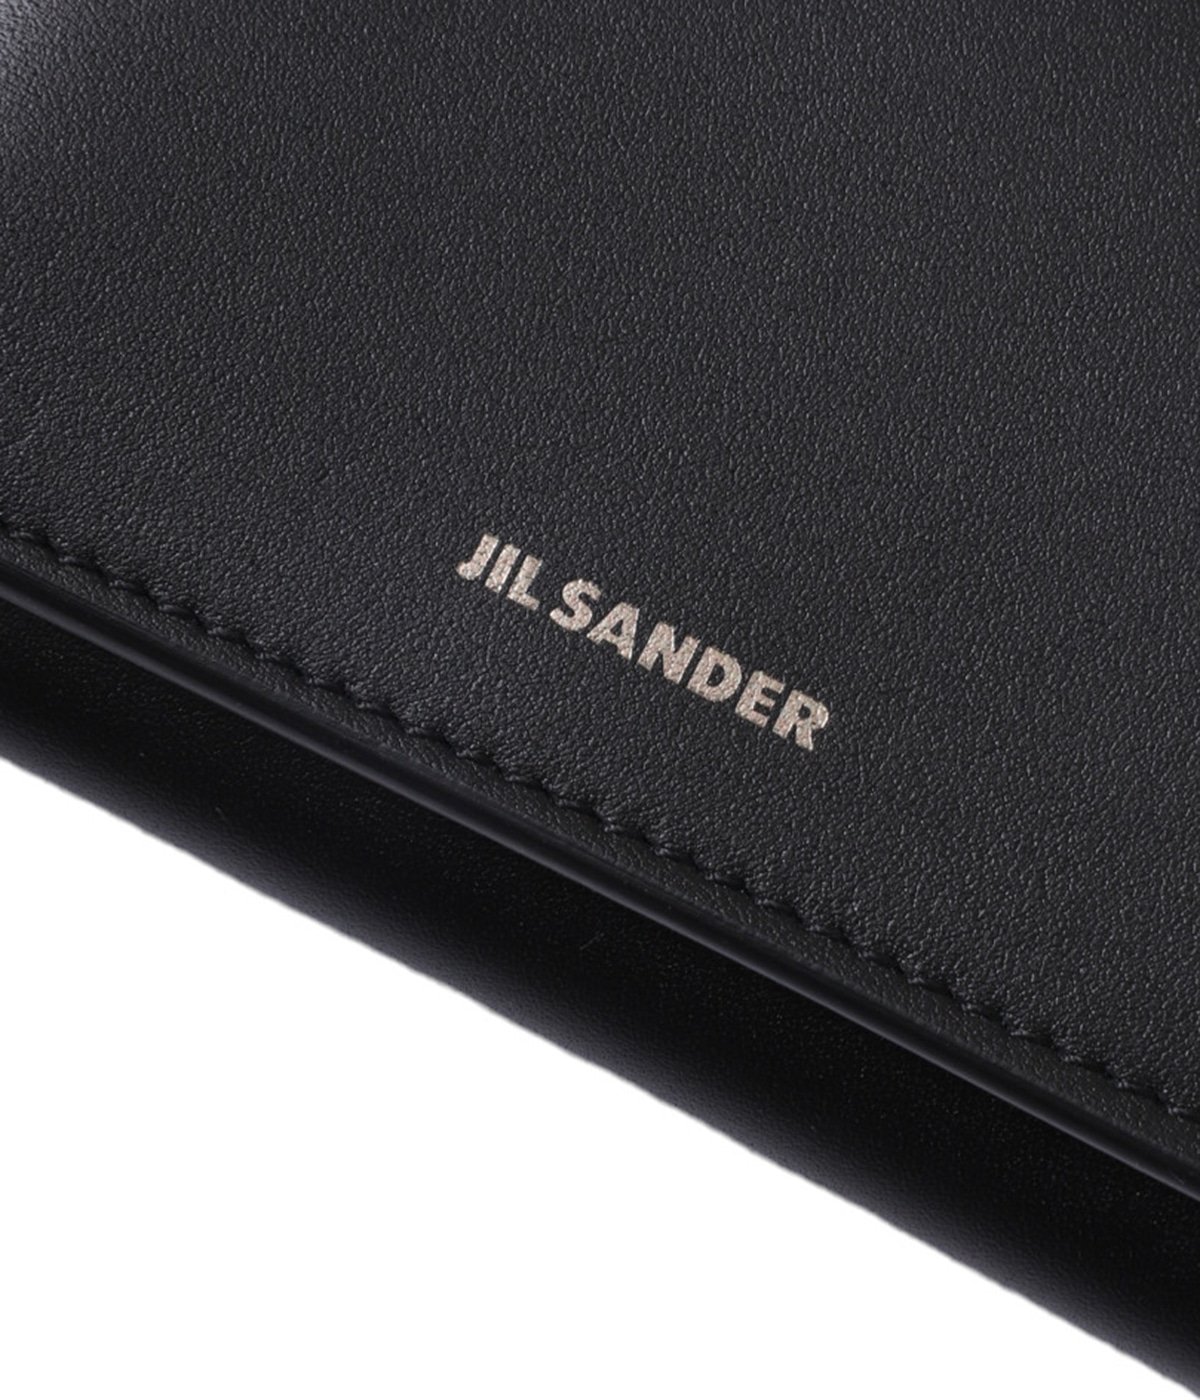 ORIGAMI WALLET | JIL SANDER(ジルサンダー) / ファッション雑貨 財布 